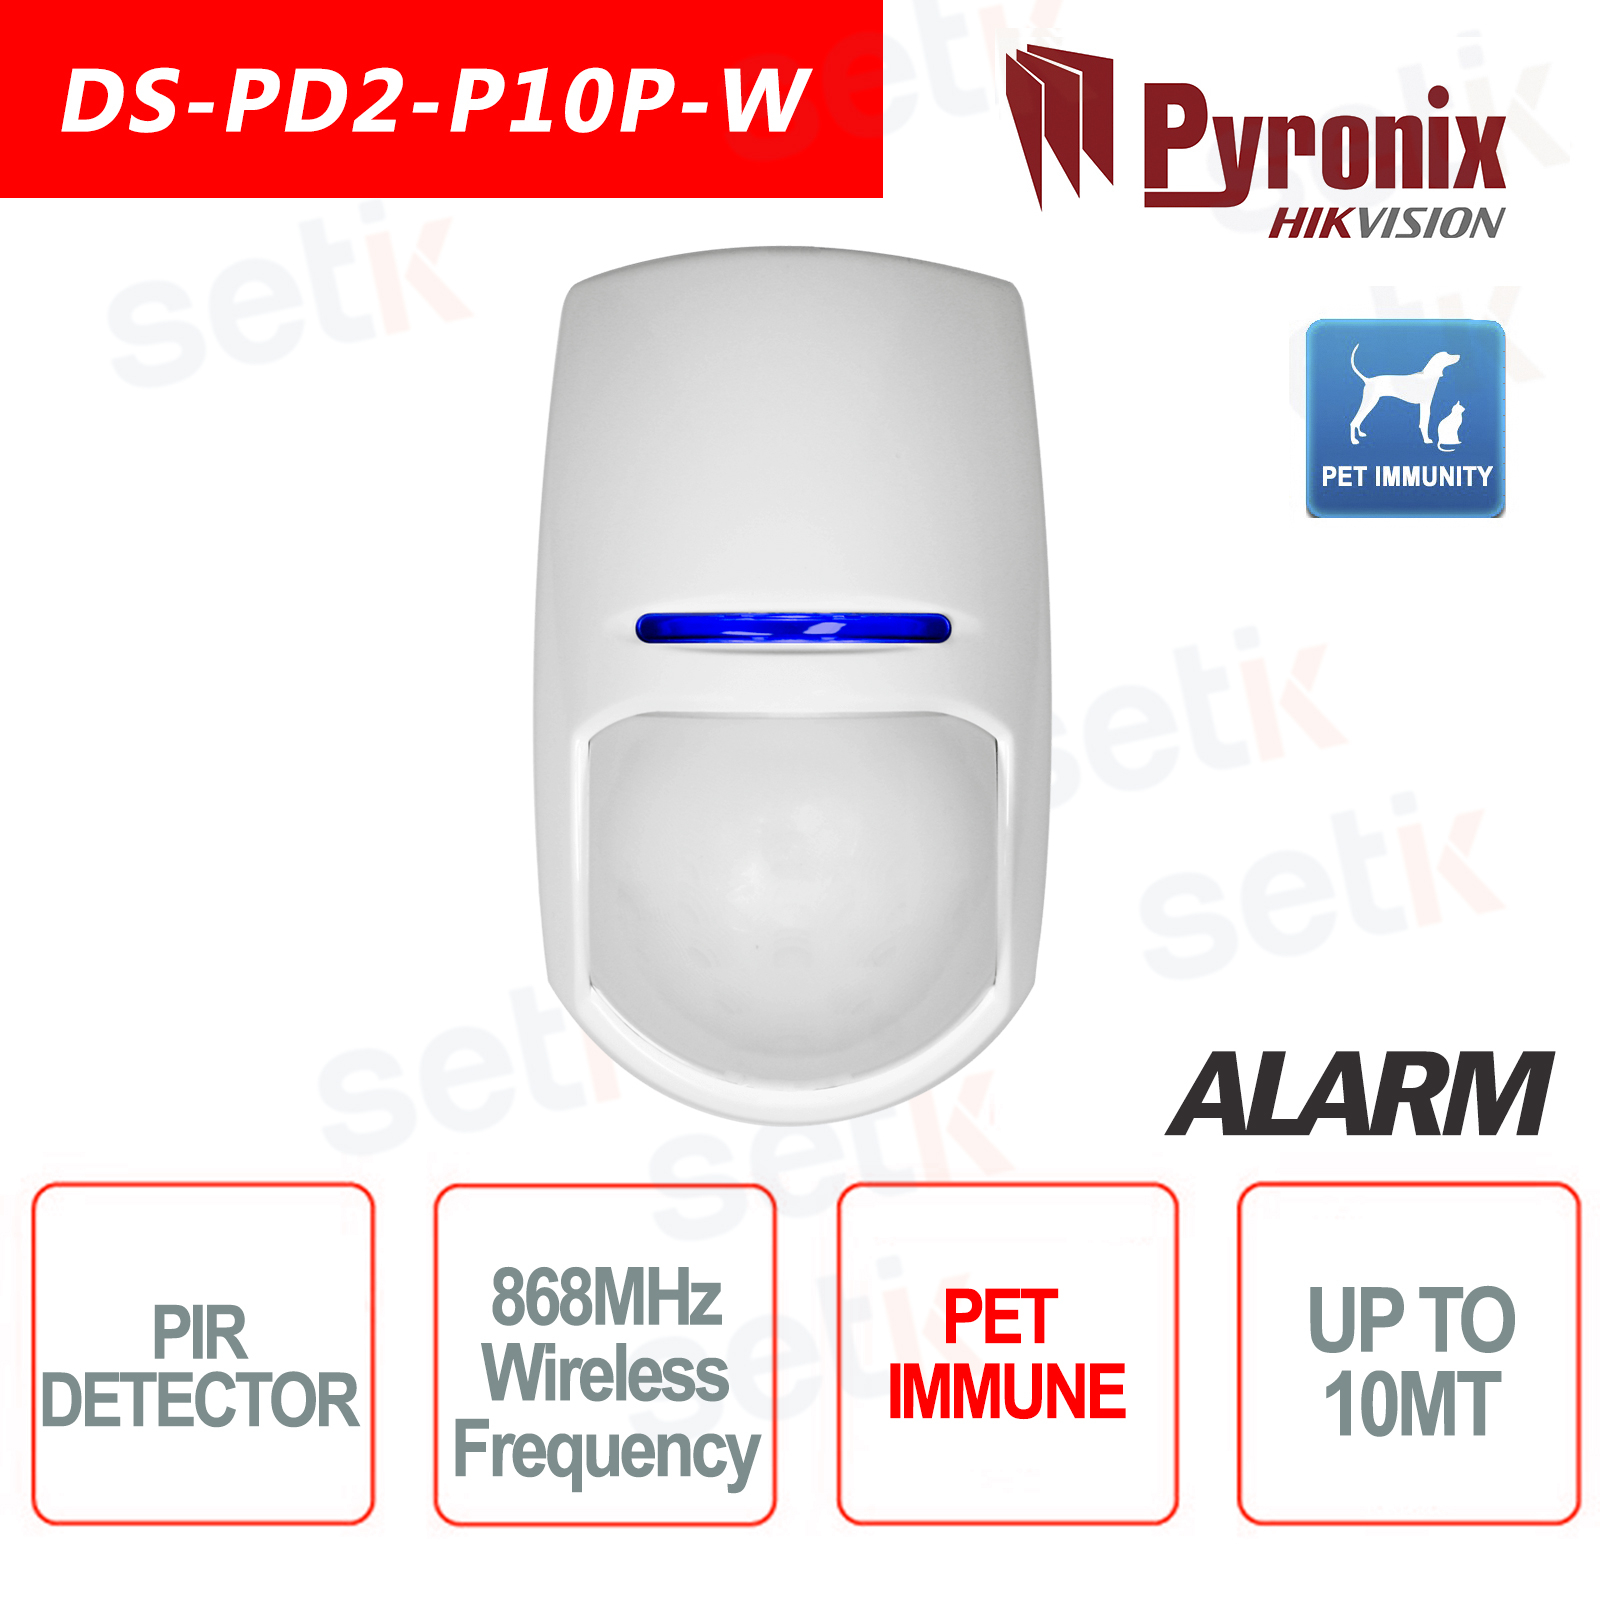 Sécurité Alarme jusqu'à 24 kg Animaux Pyronix KX10DP Dual 10 M Pet Immune Détecteur 